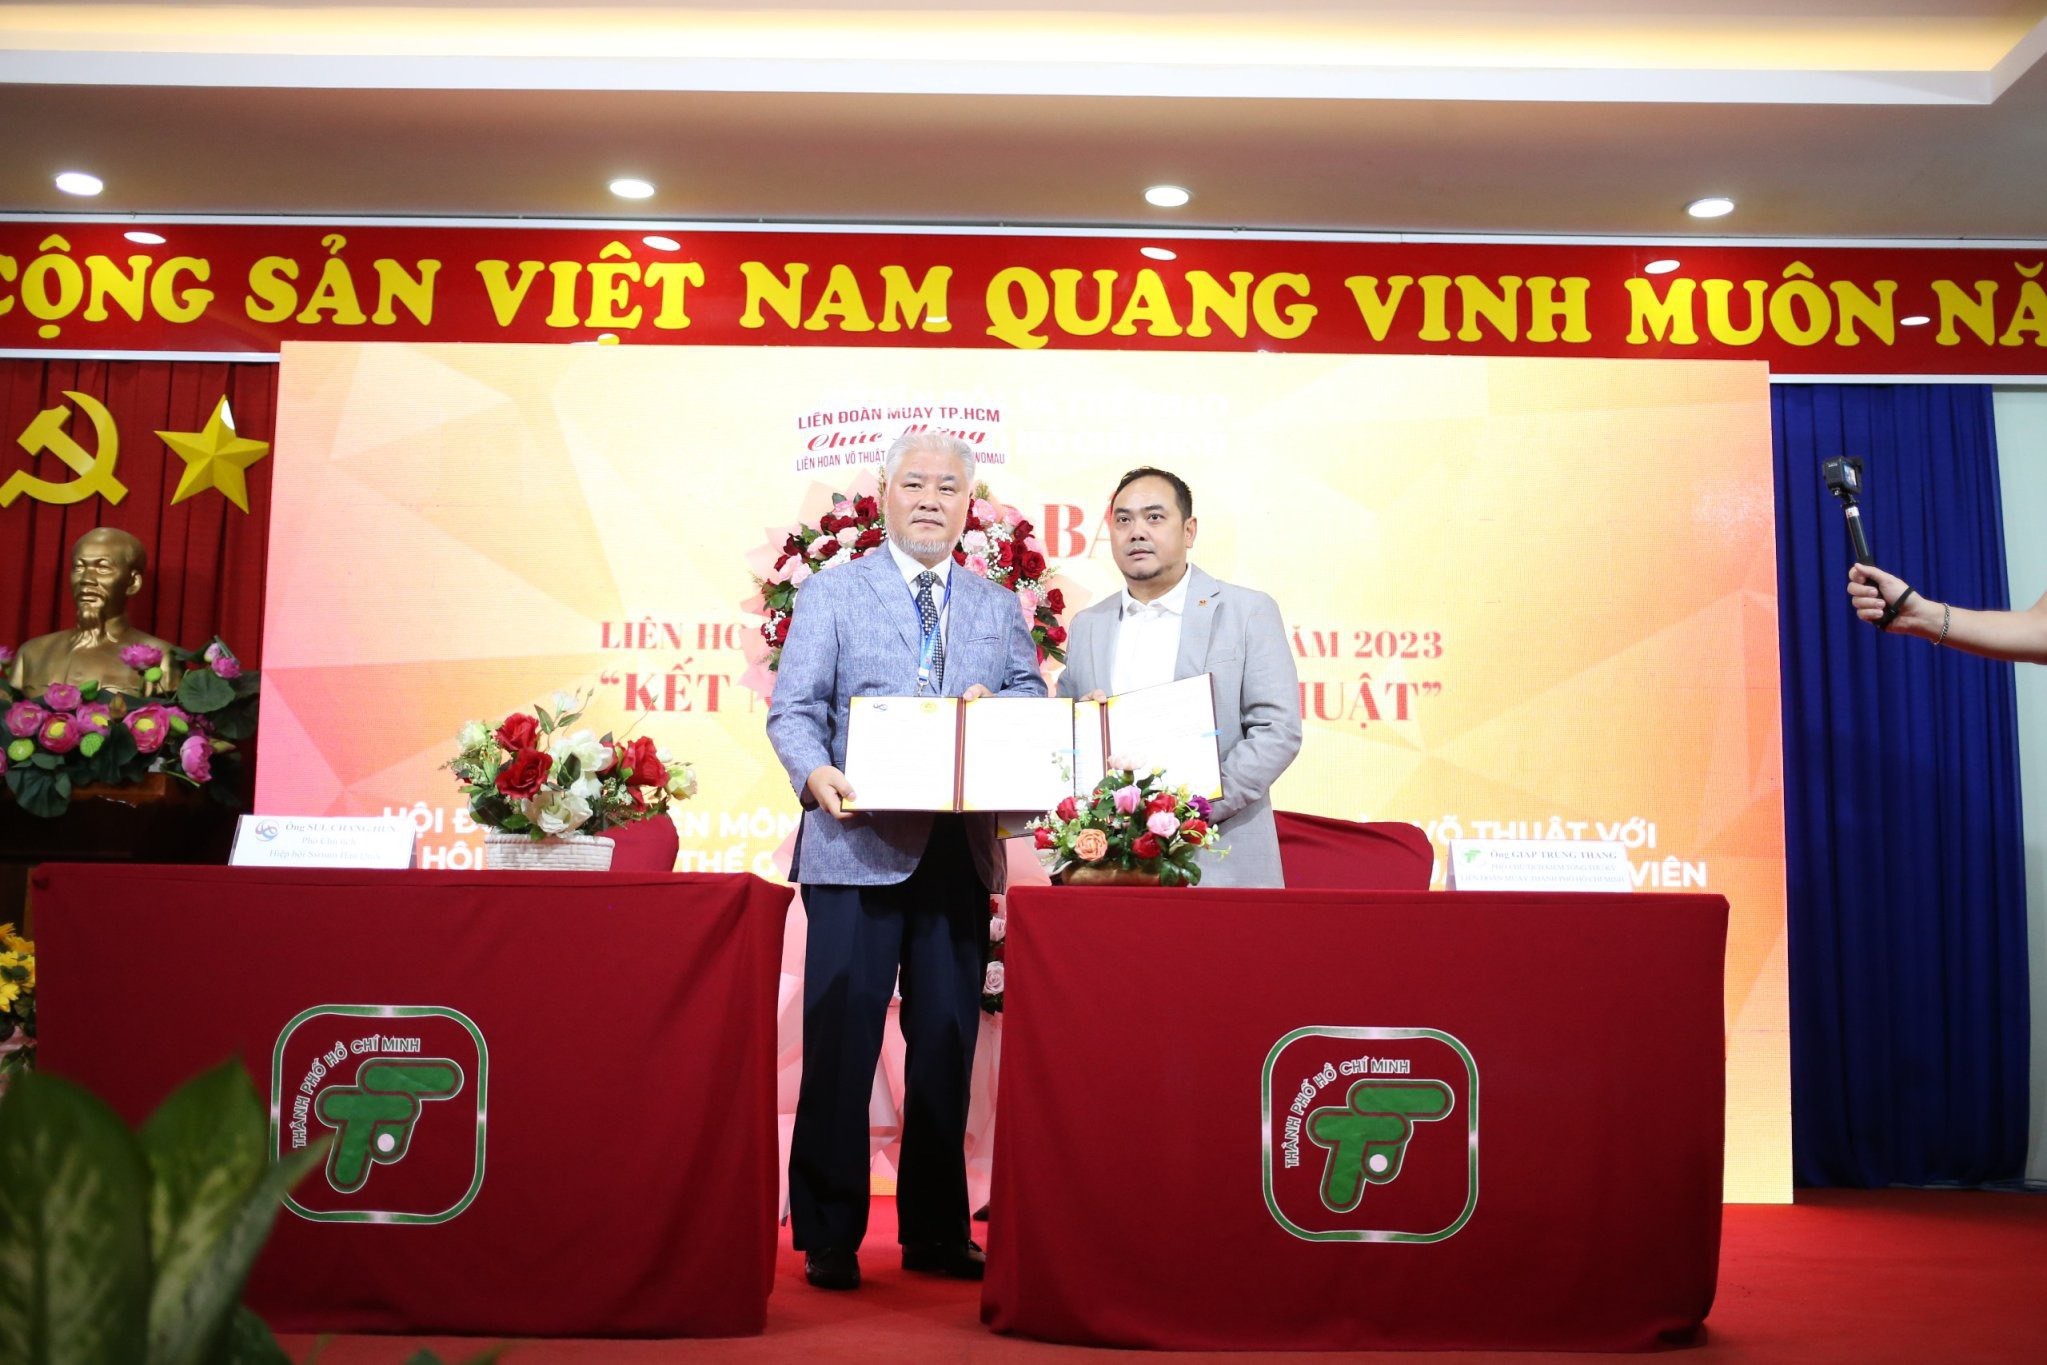 Khởi động Liên hoan Võ thuật Thành phố Hồ Chí Minh năm 2023 “Kết nối tinh hoa Võ thuật”